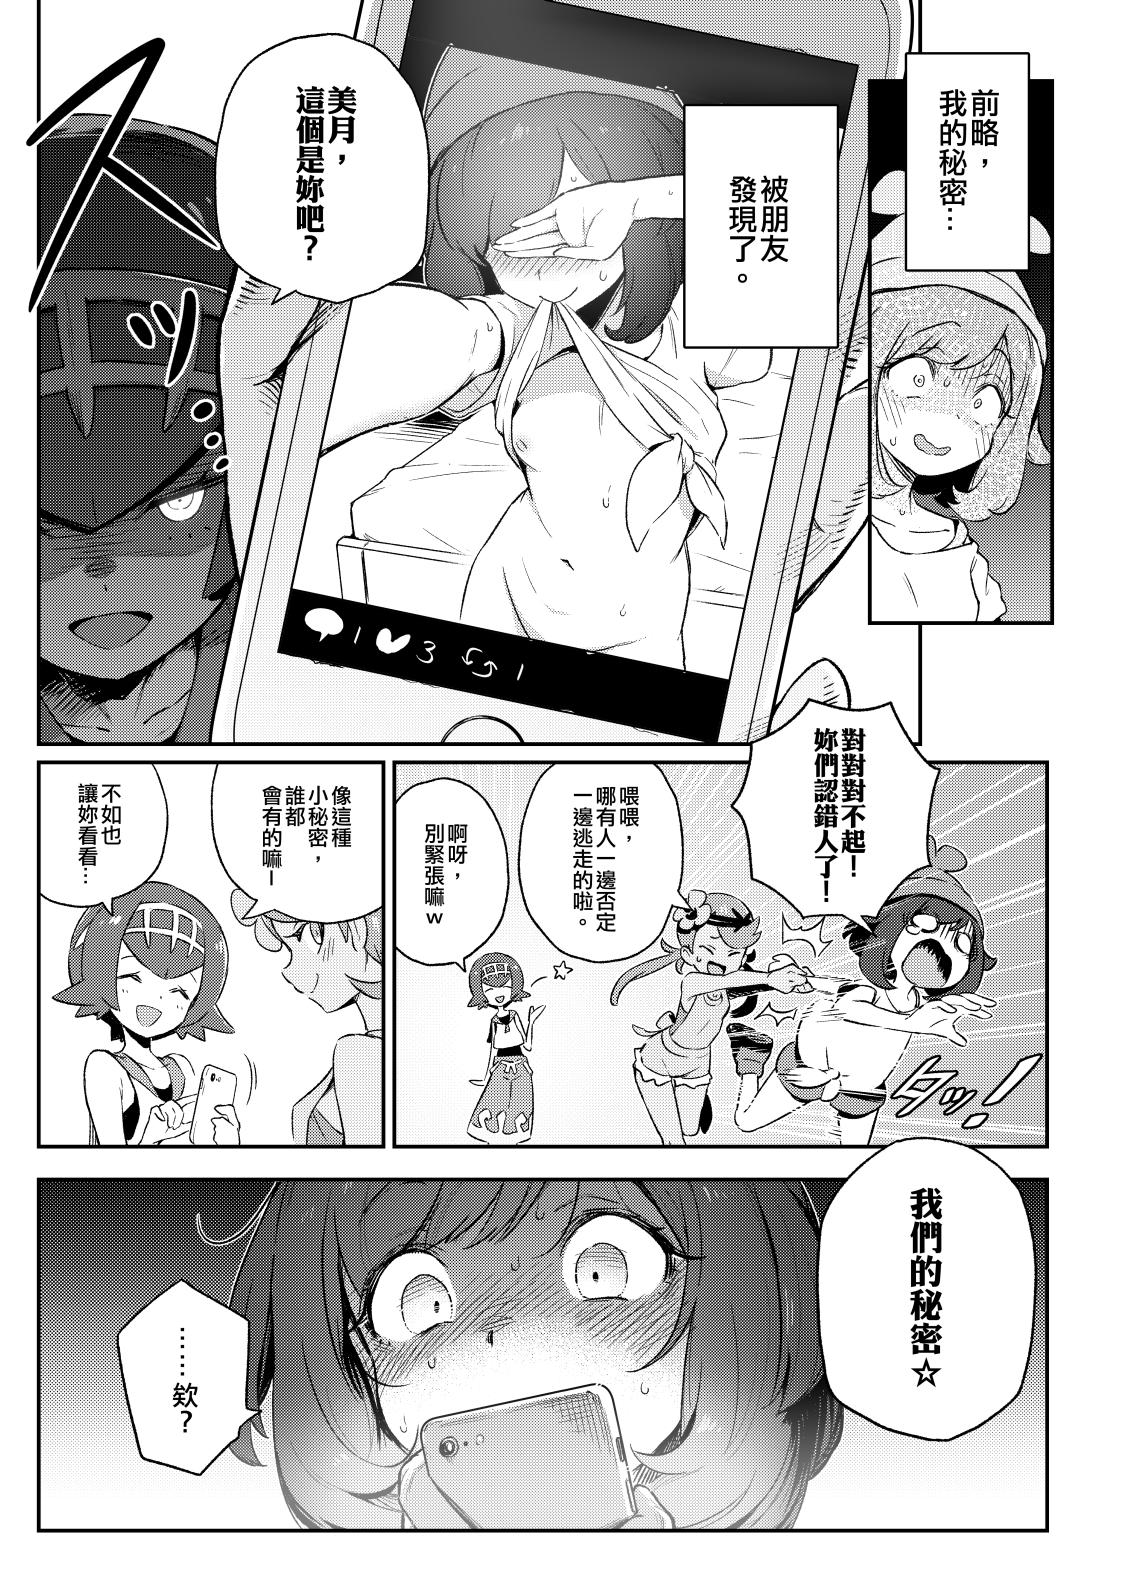 Gordibuena Onnanoko-tachi no Himitsu no Bouken | 女孩們的秘密冒險 - Pokemon | pocket monsters Abuse - Page 4